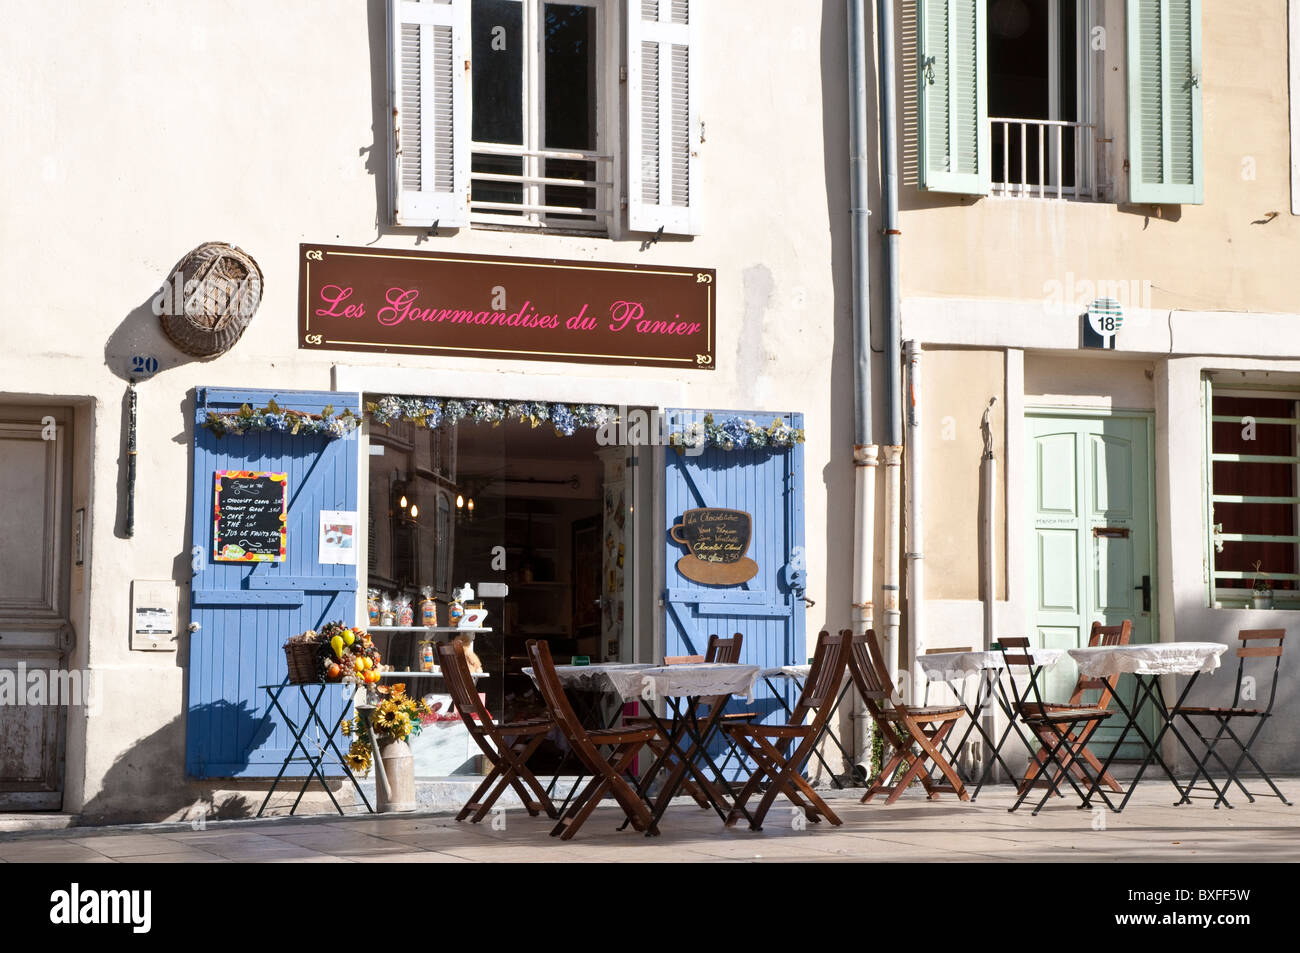 Restaurant sur une place dans le quartier du Panier, Marseille, France  Photo Stock - Alamy